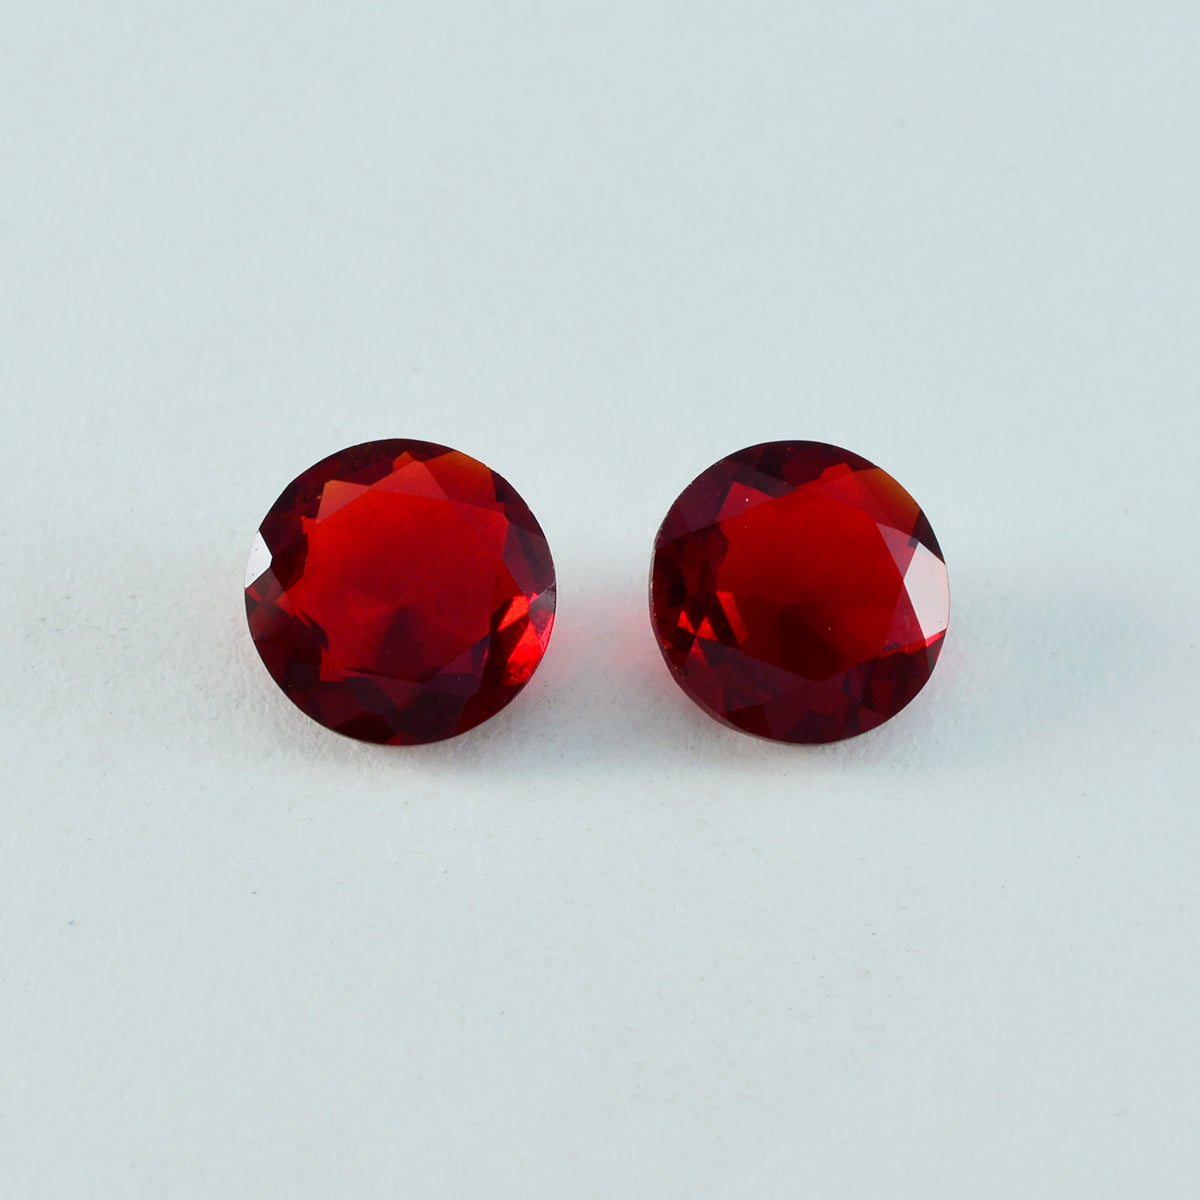 riyogems 1шт красный рубин cz ограненный 12x12 мм круглая форма красивый качественный камень